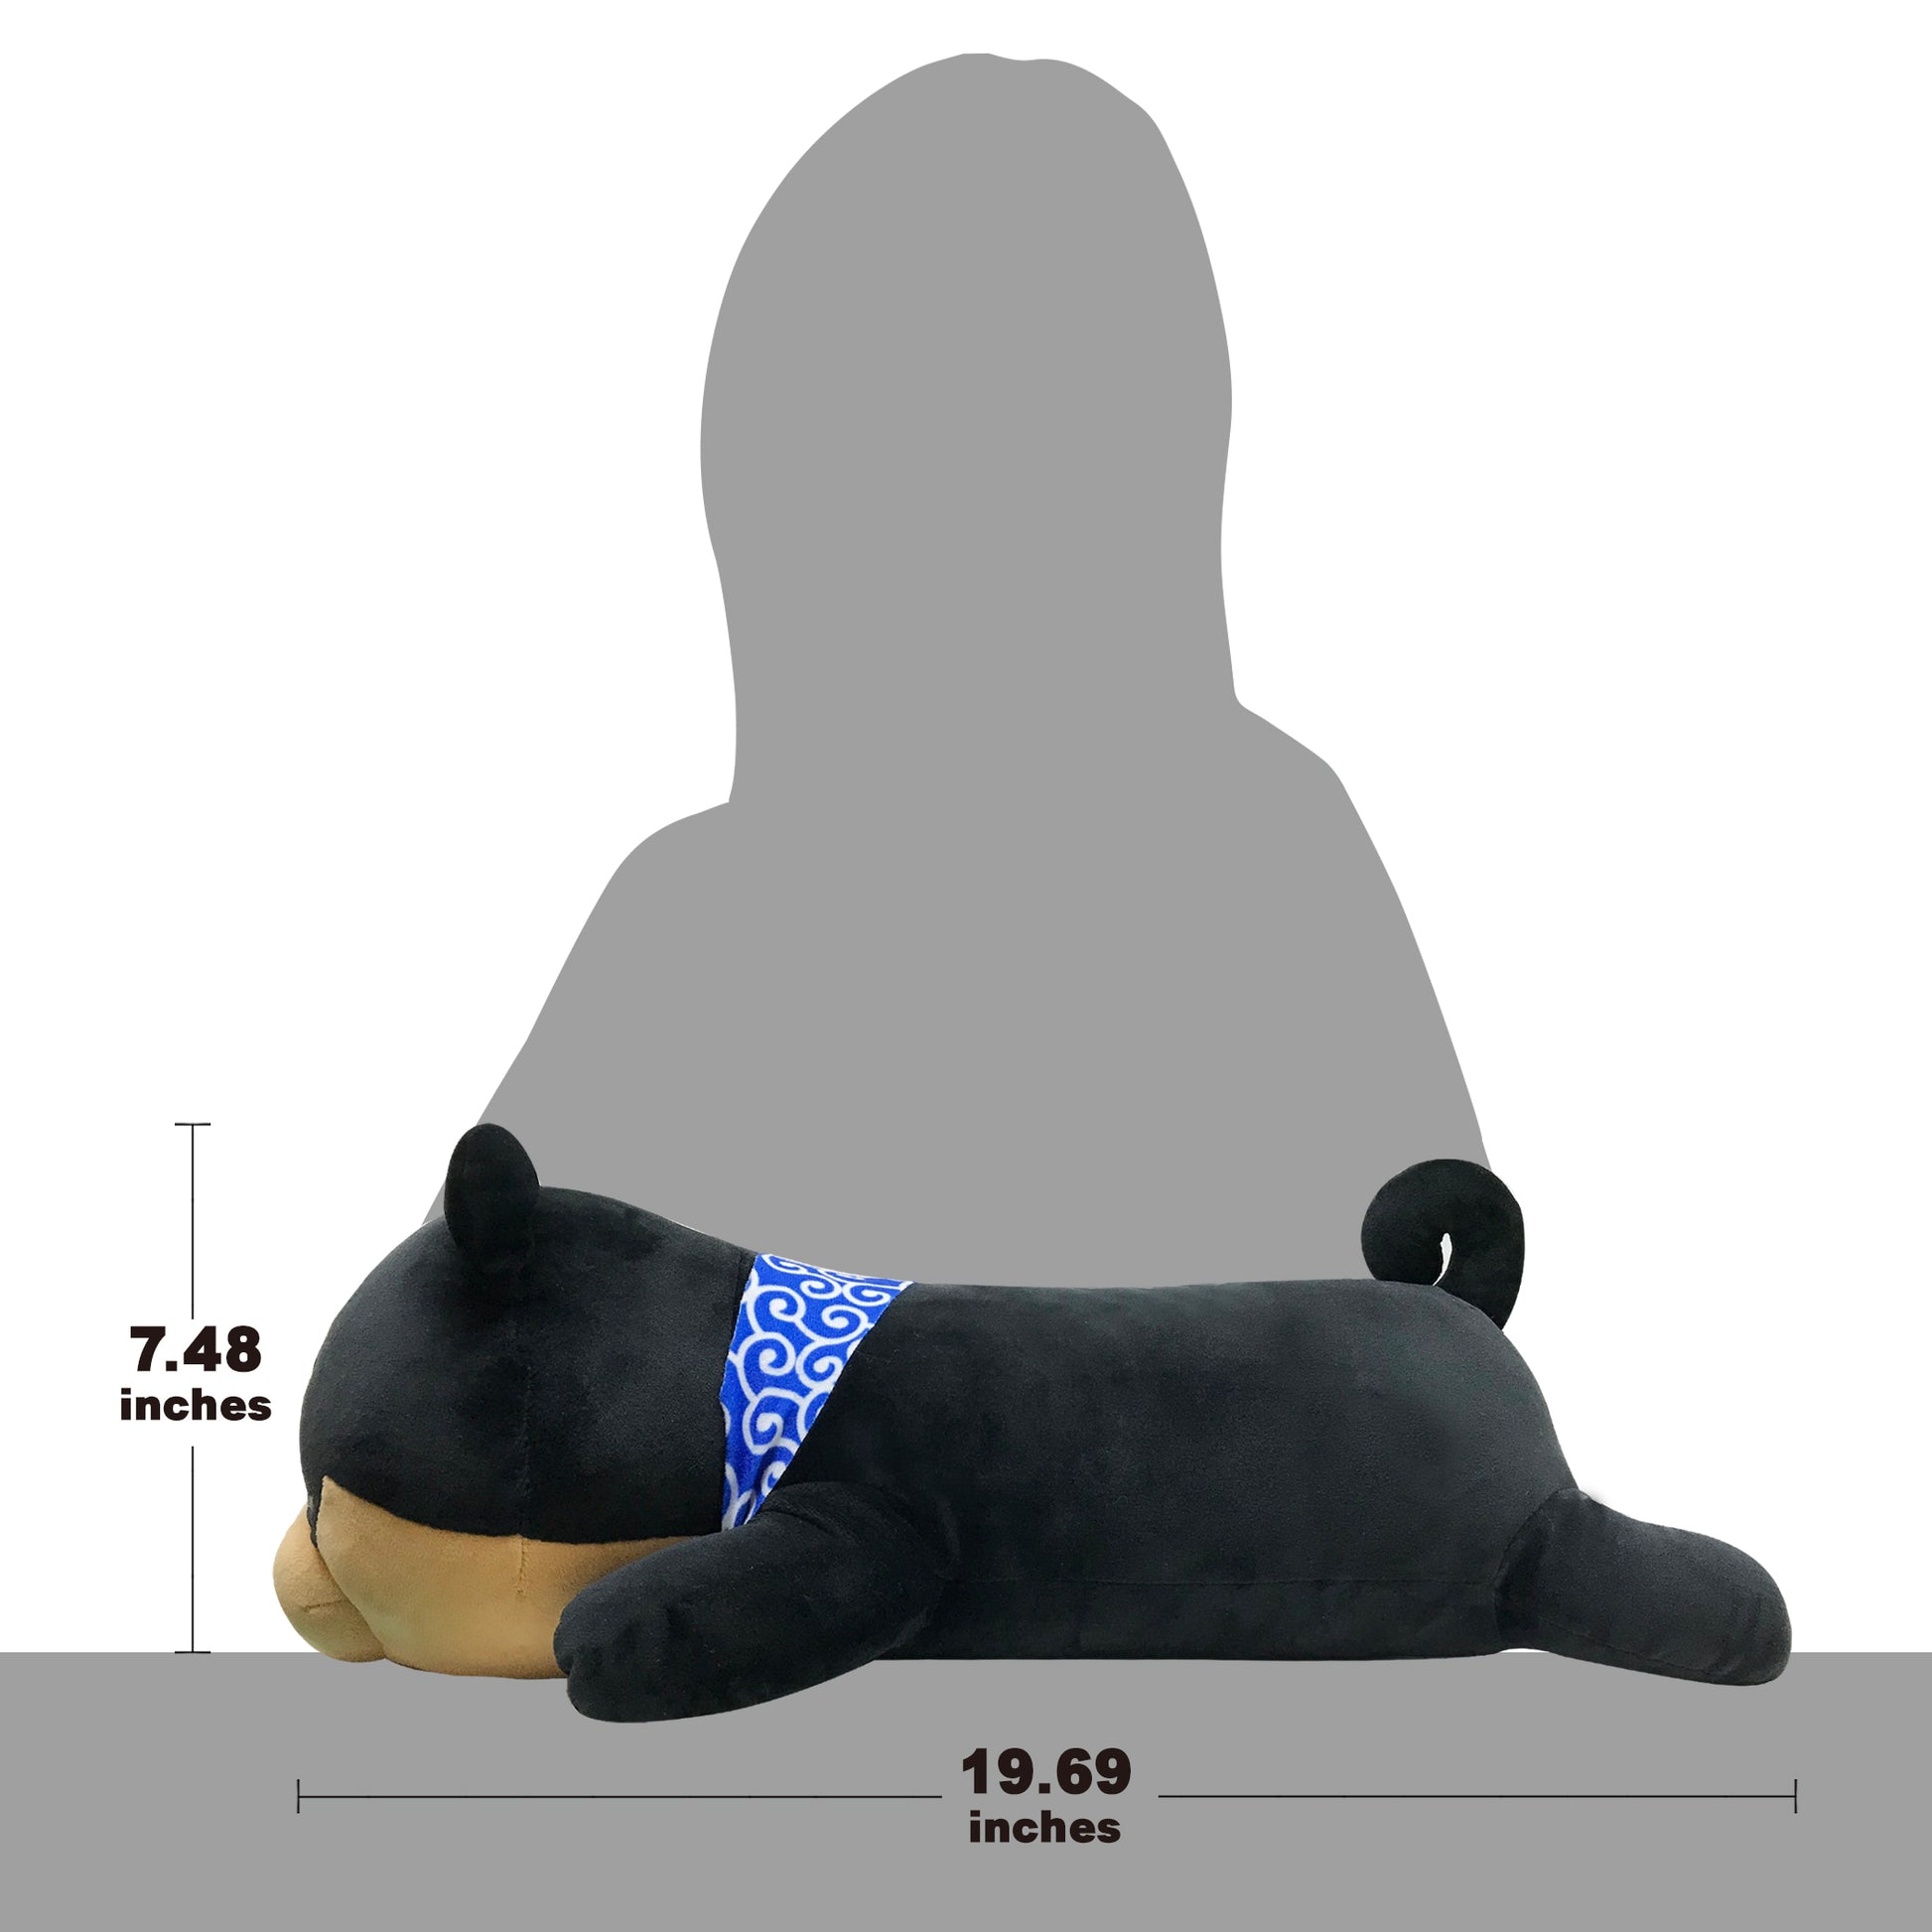 Sense of size of stuffed dog Mameshiba black pillow